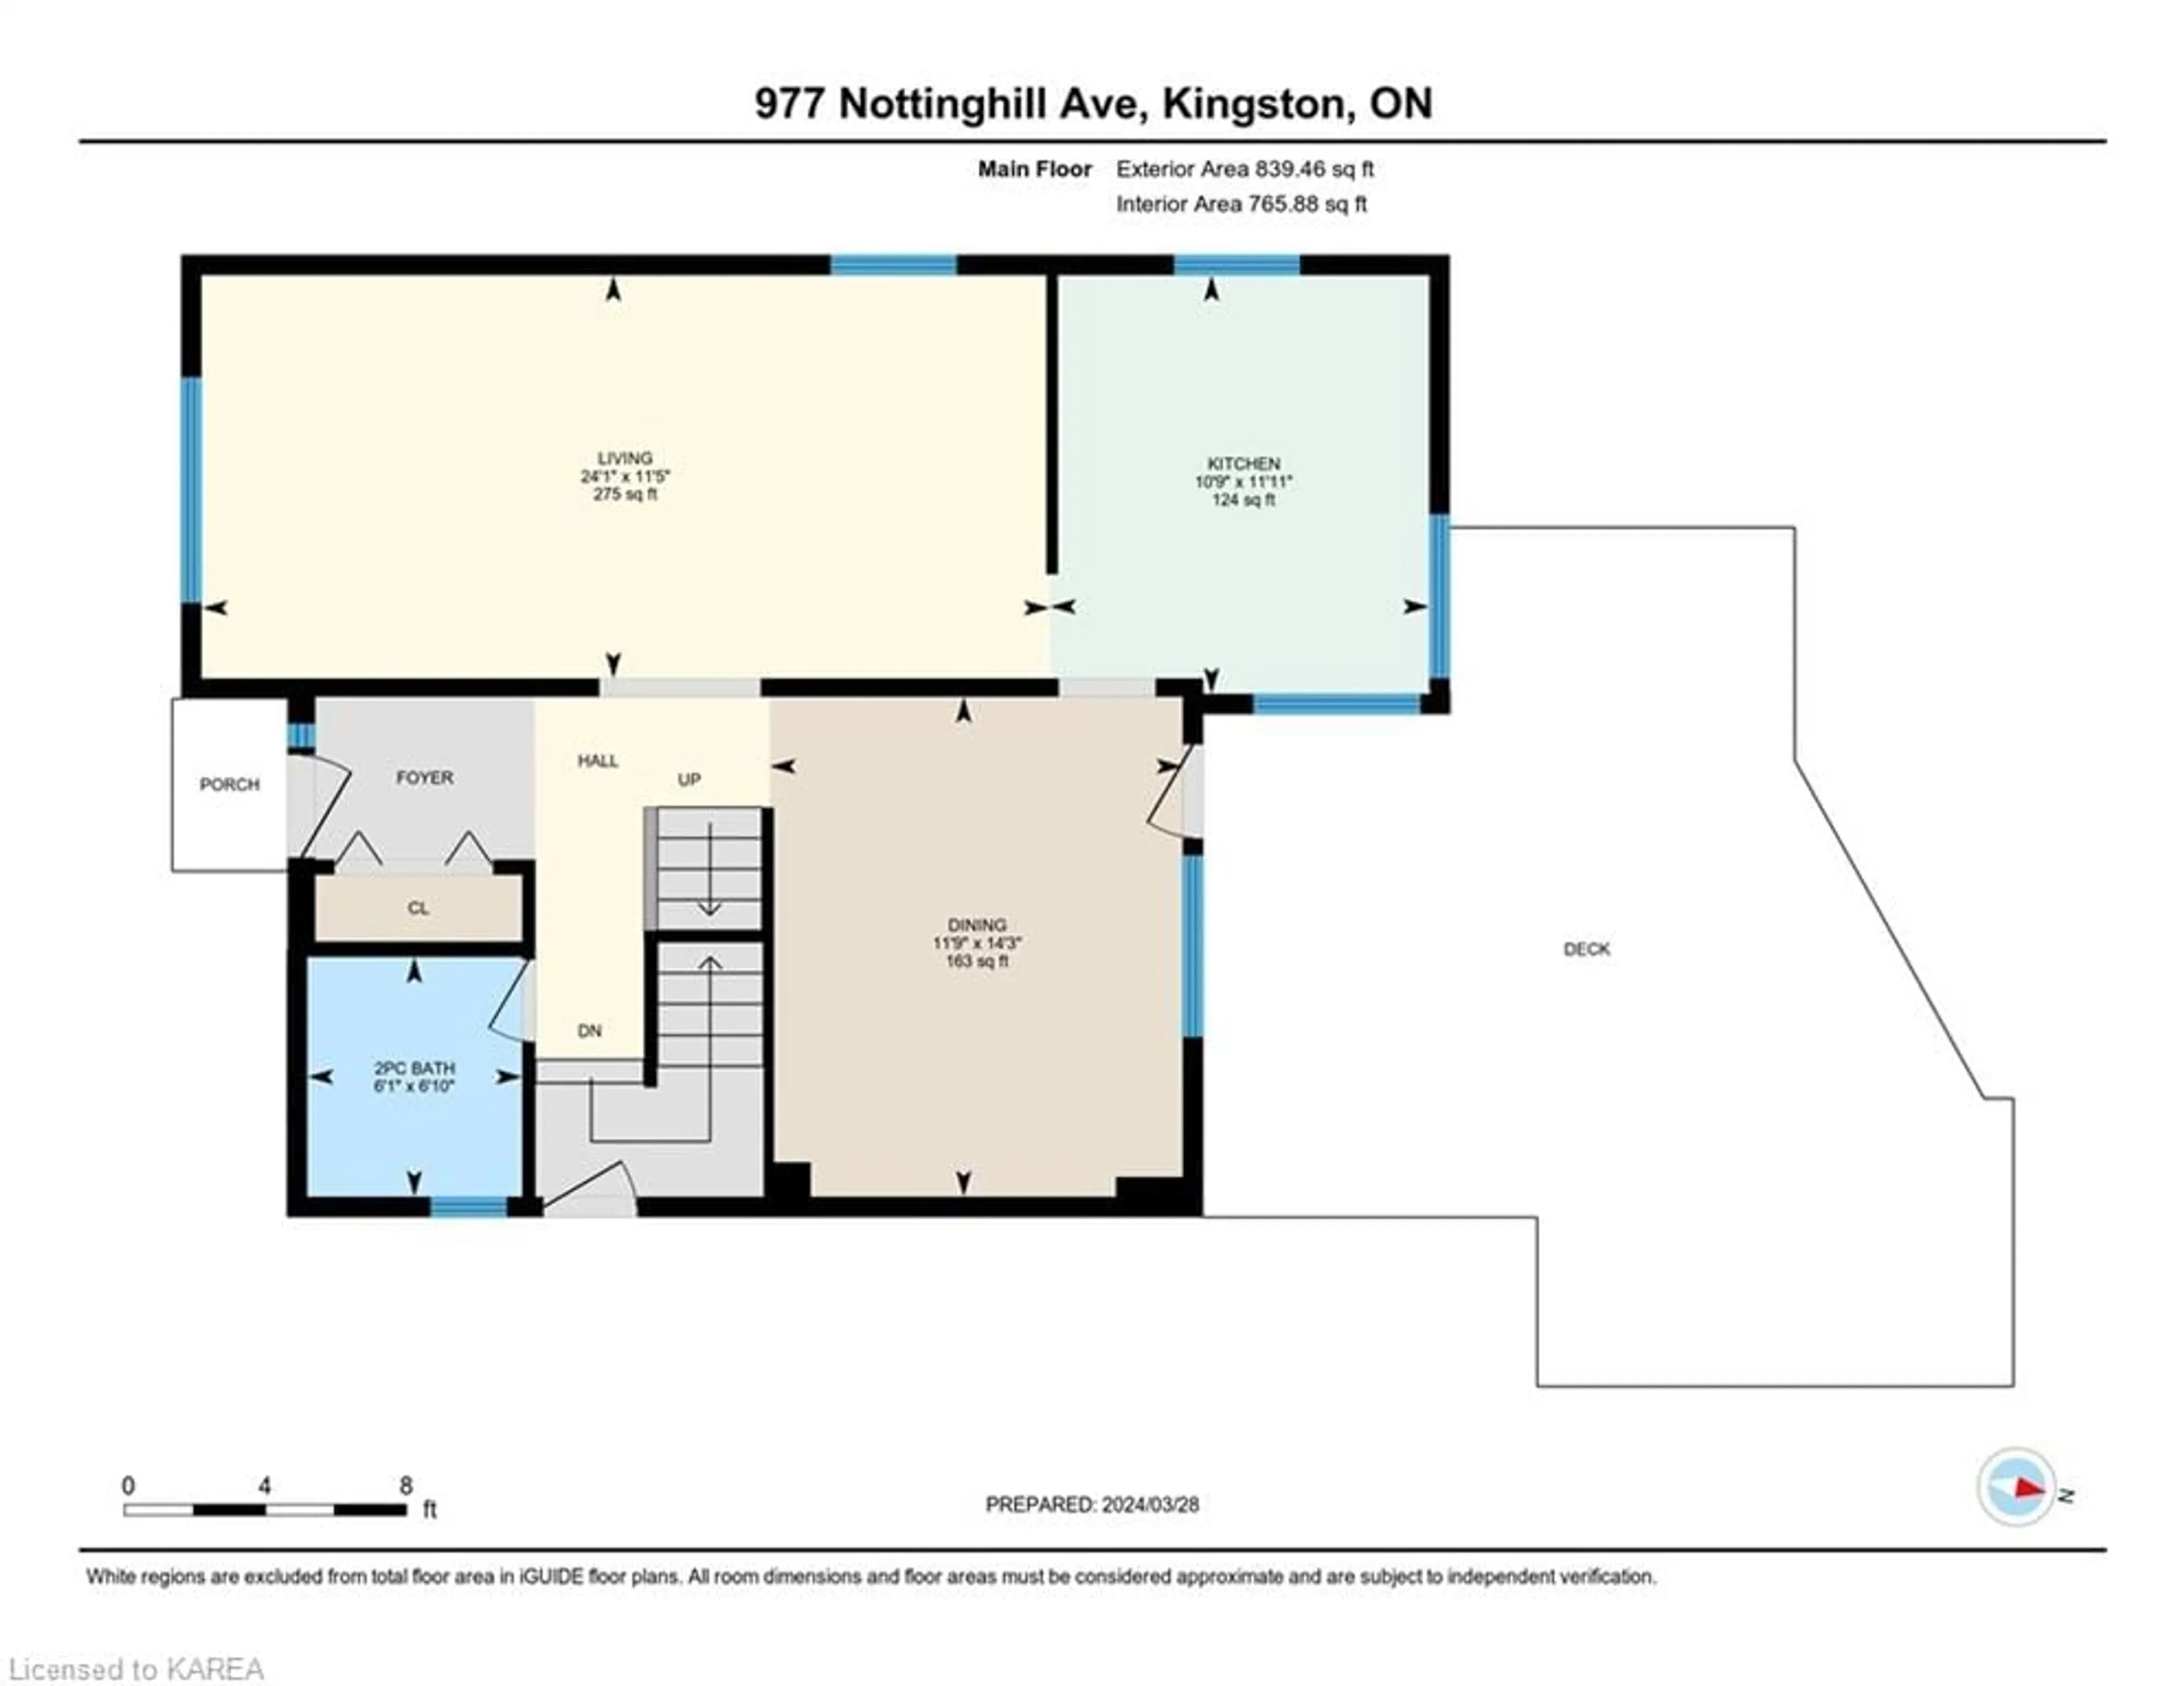 Floor plan for 977 Nottinghill Ave, Kingston Ontario K7P 2B9